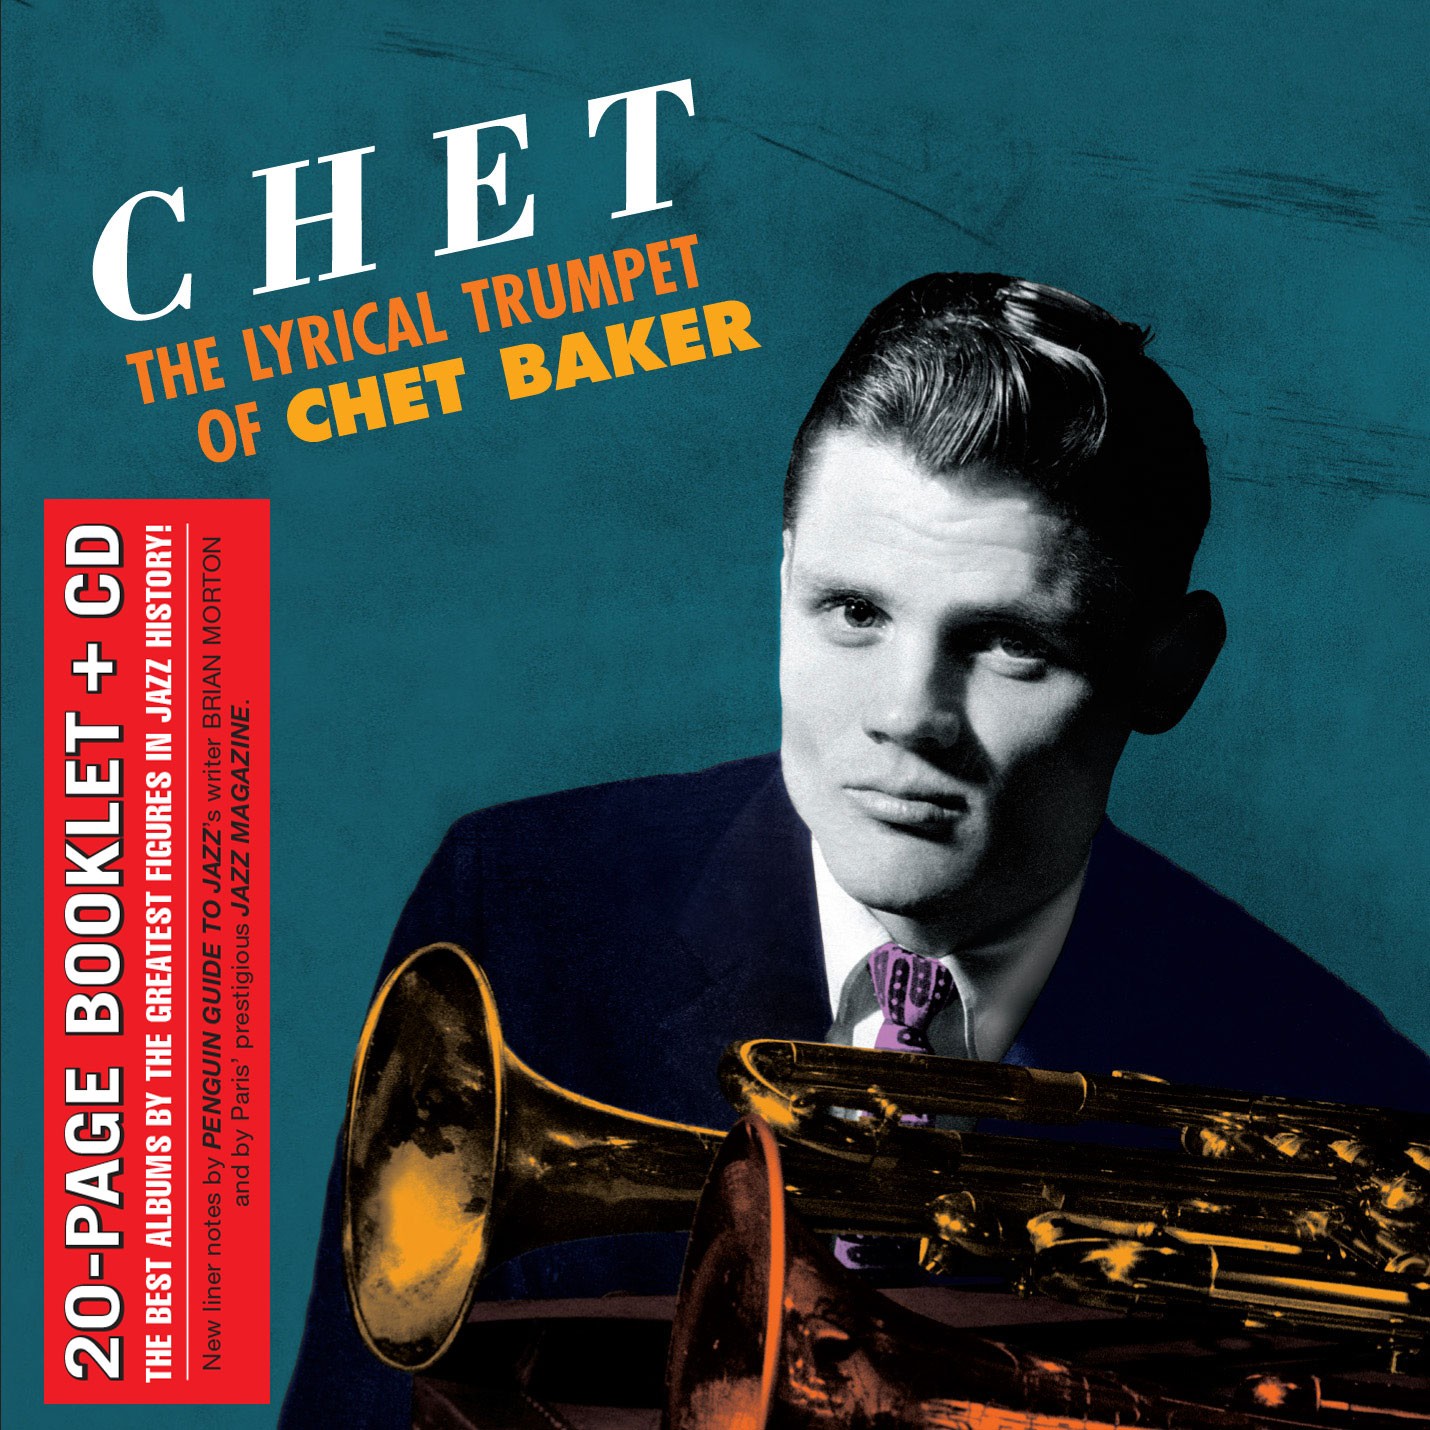 Chet - The Lyrical Trumpet of Chet Baker - Jazz Messengers